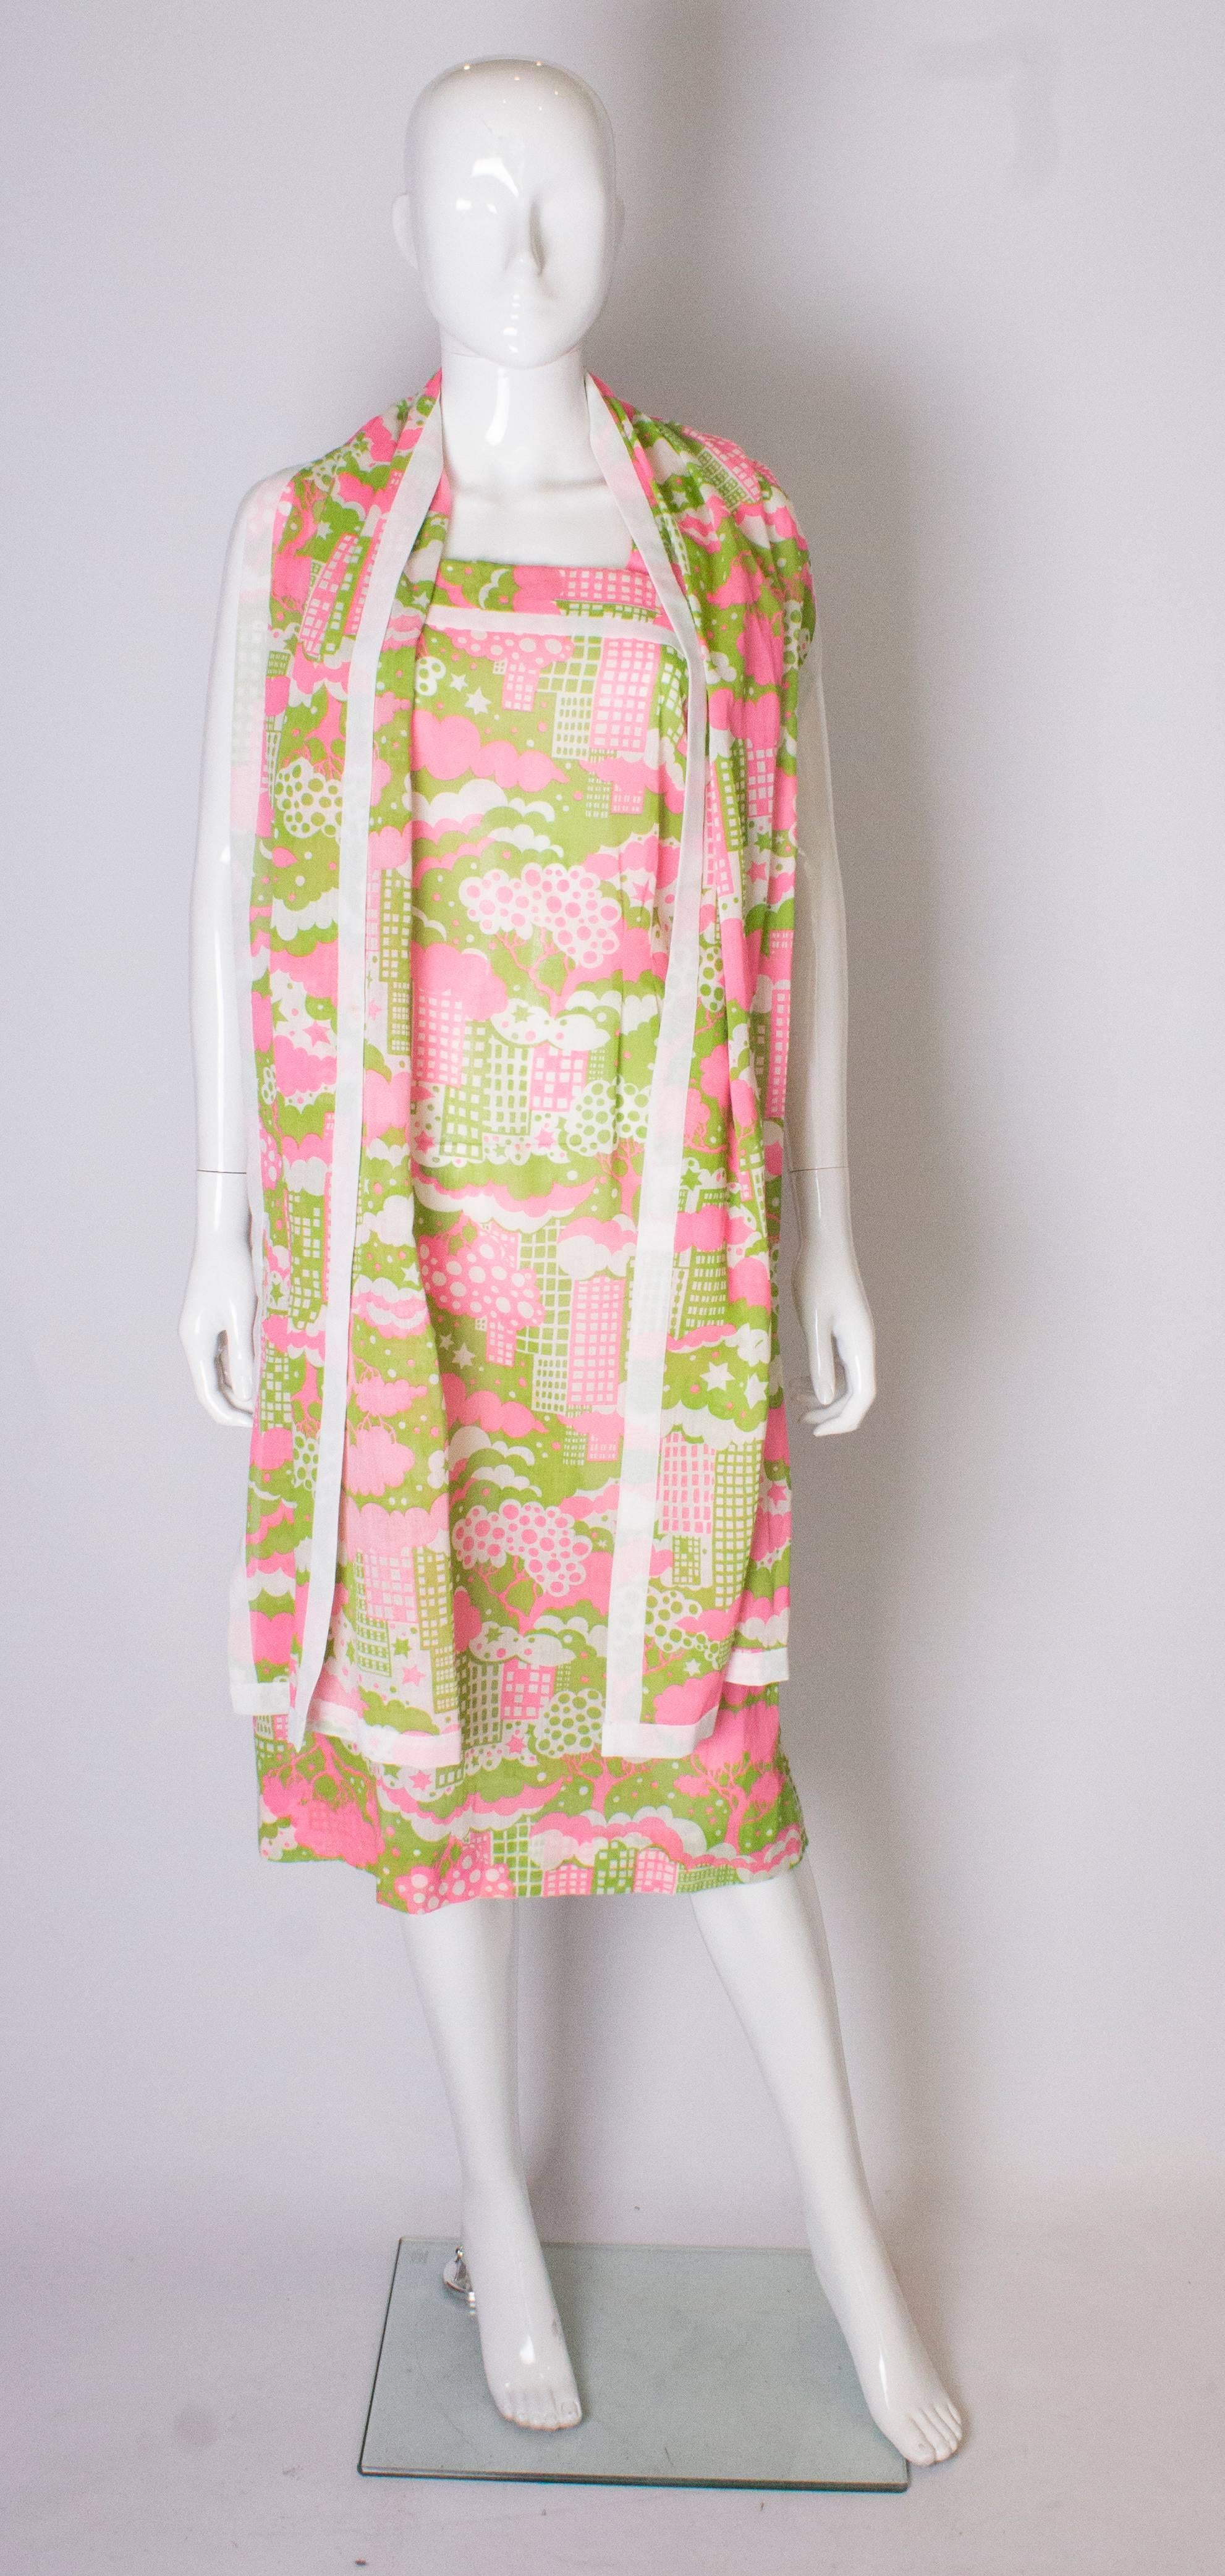 Un plaisir  Impression abstraite vintage  robe de soleil avec écharpe assortie. La robe est un imprimé de rose, de blanc et de vert sauge,  avec une bordure blanche.  Il est doté de deux bretelles et d'une fermeture éclair centrale au dos.
L'écharpe